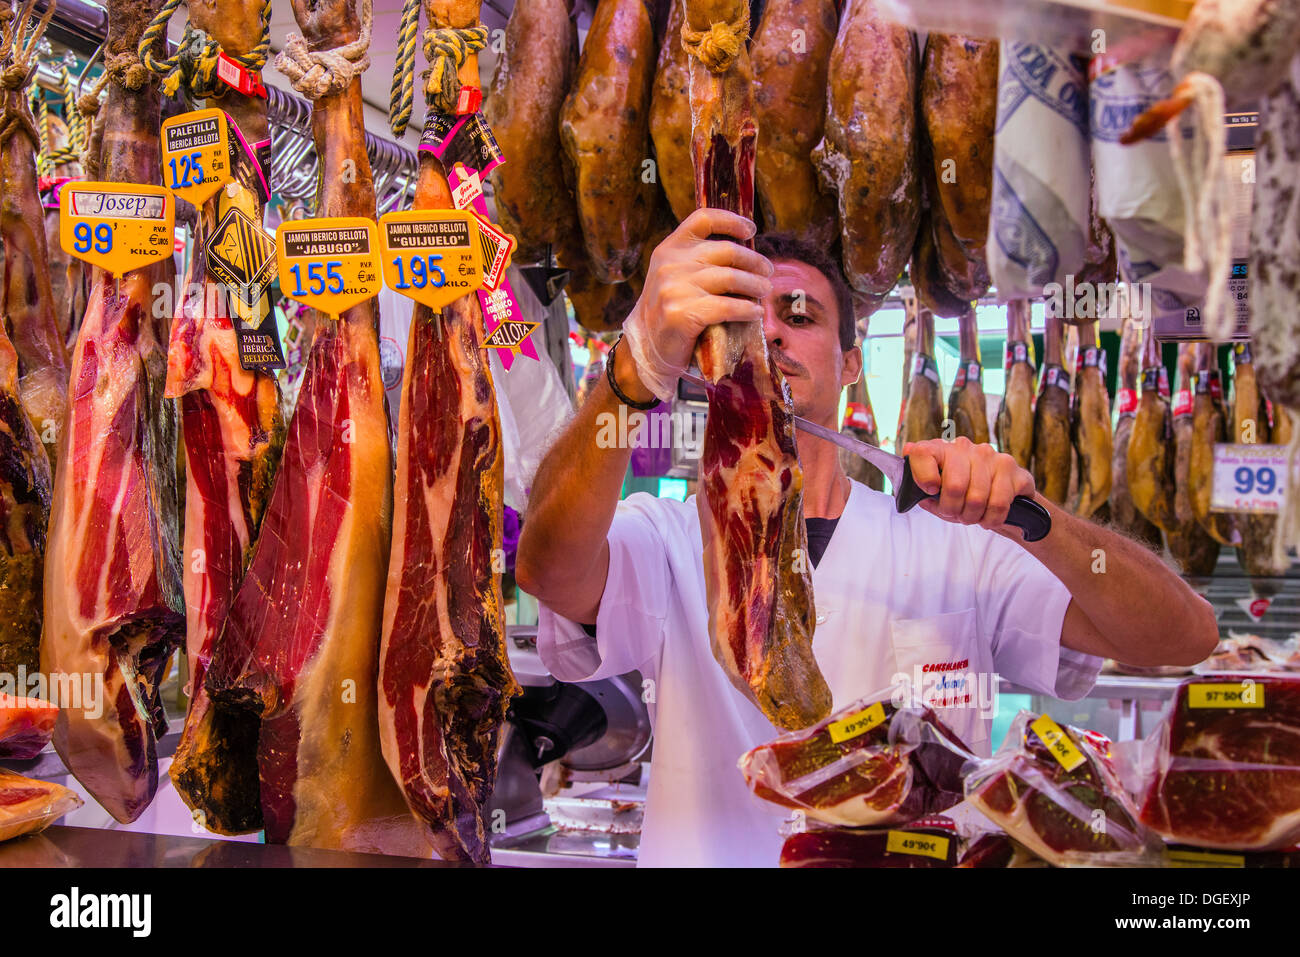 Tendero al cortar el jamón en el mercado de la Boqueria, Barcelona, Cataluña, España Foto de stock